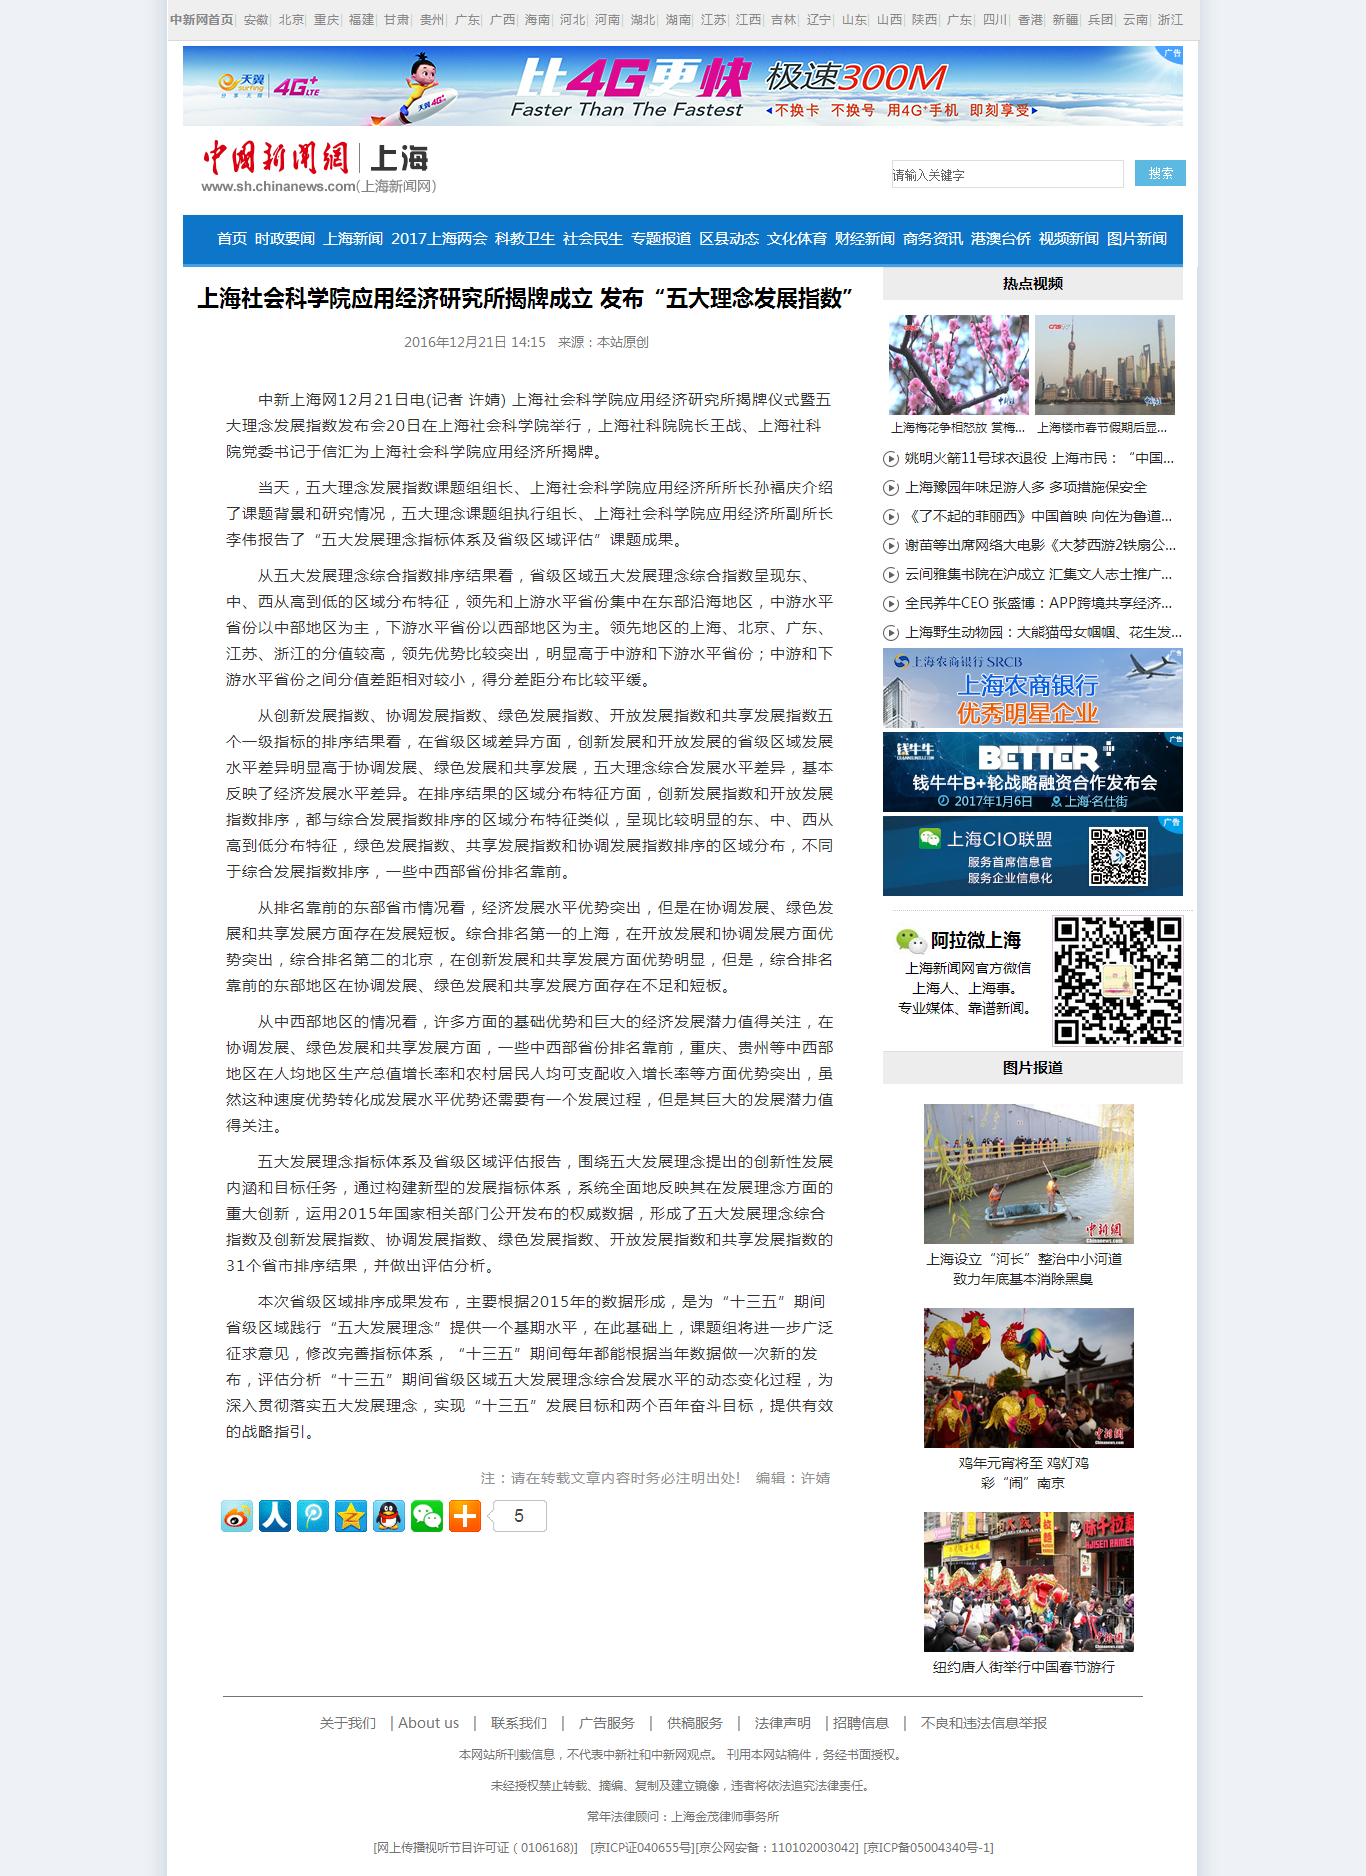 上海社会科学院应用经济研究所揭牌成立 发布“五大理念发展指数” - 上海新闻网.png